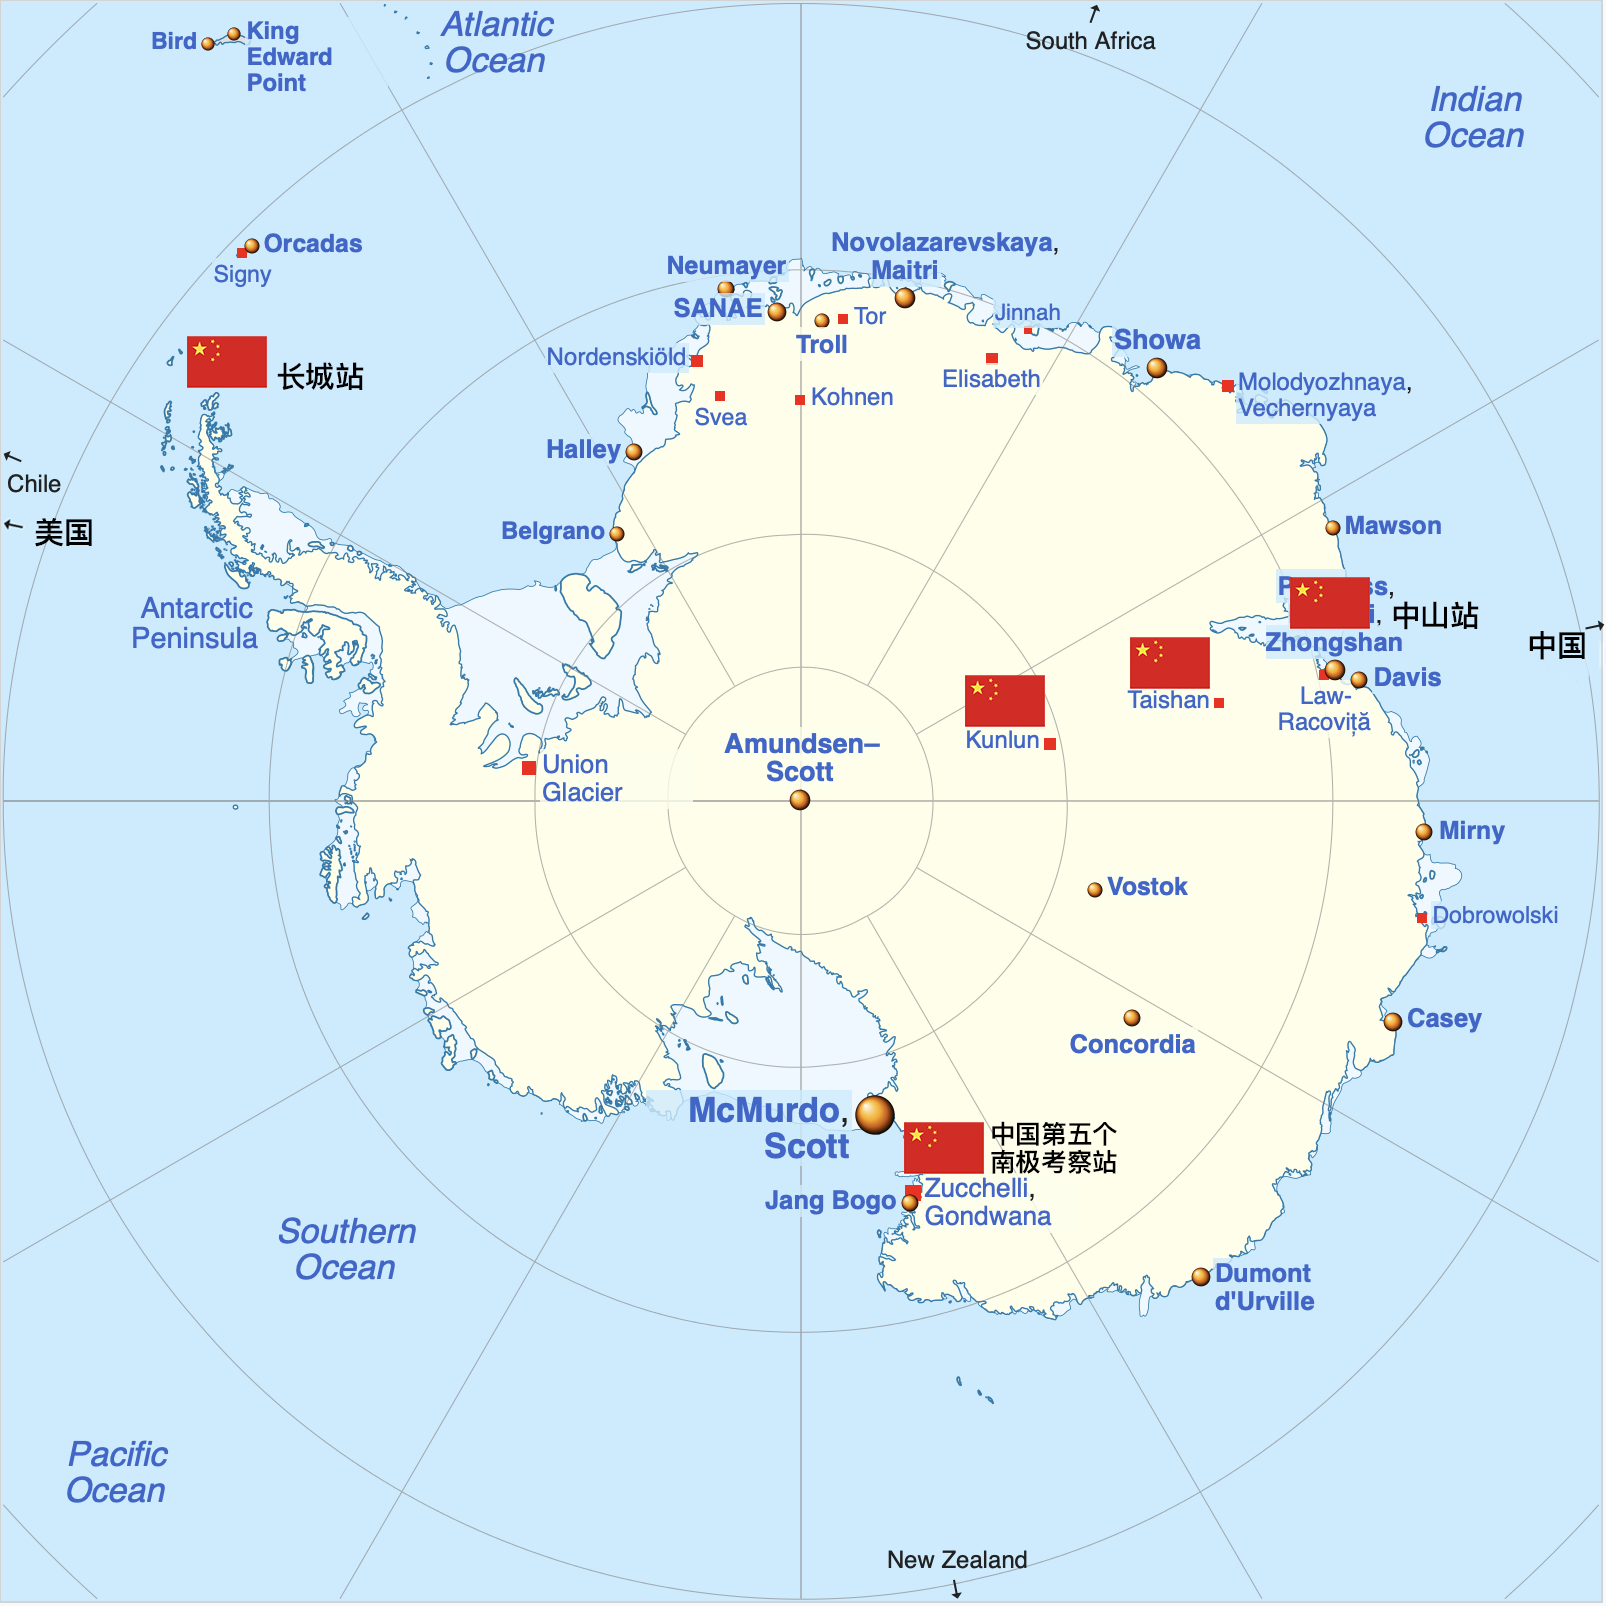 中国第五个南极考察站开站,有哪些信息值得关注?